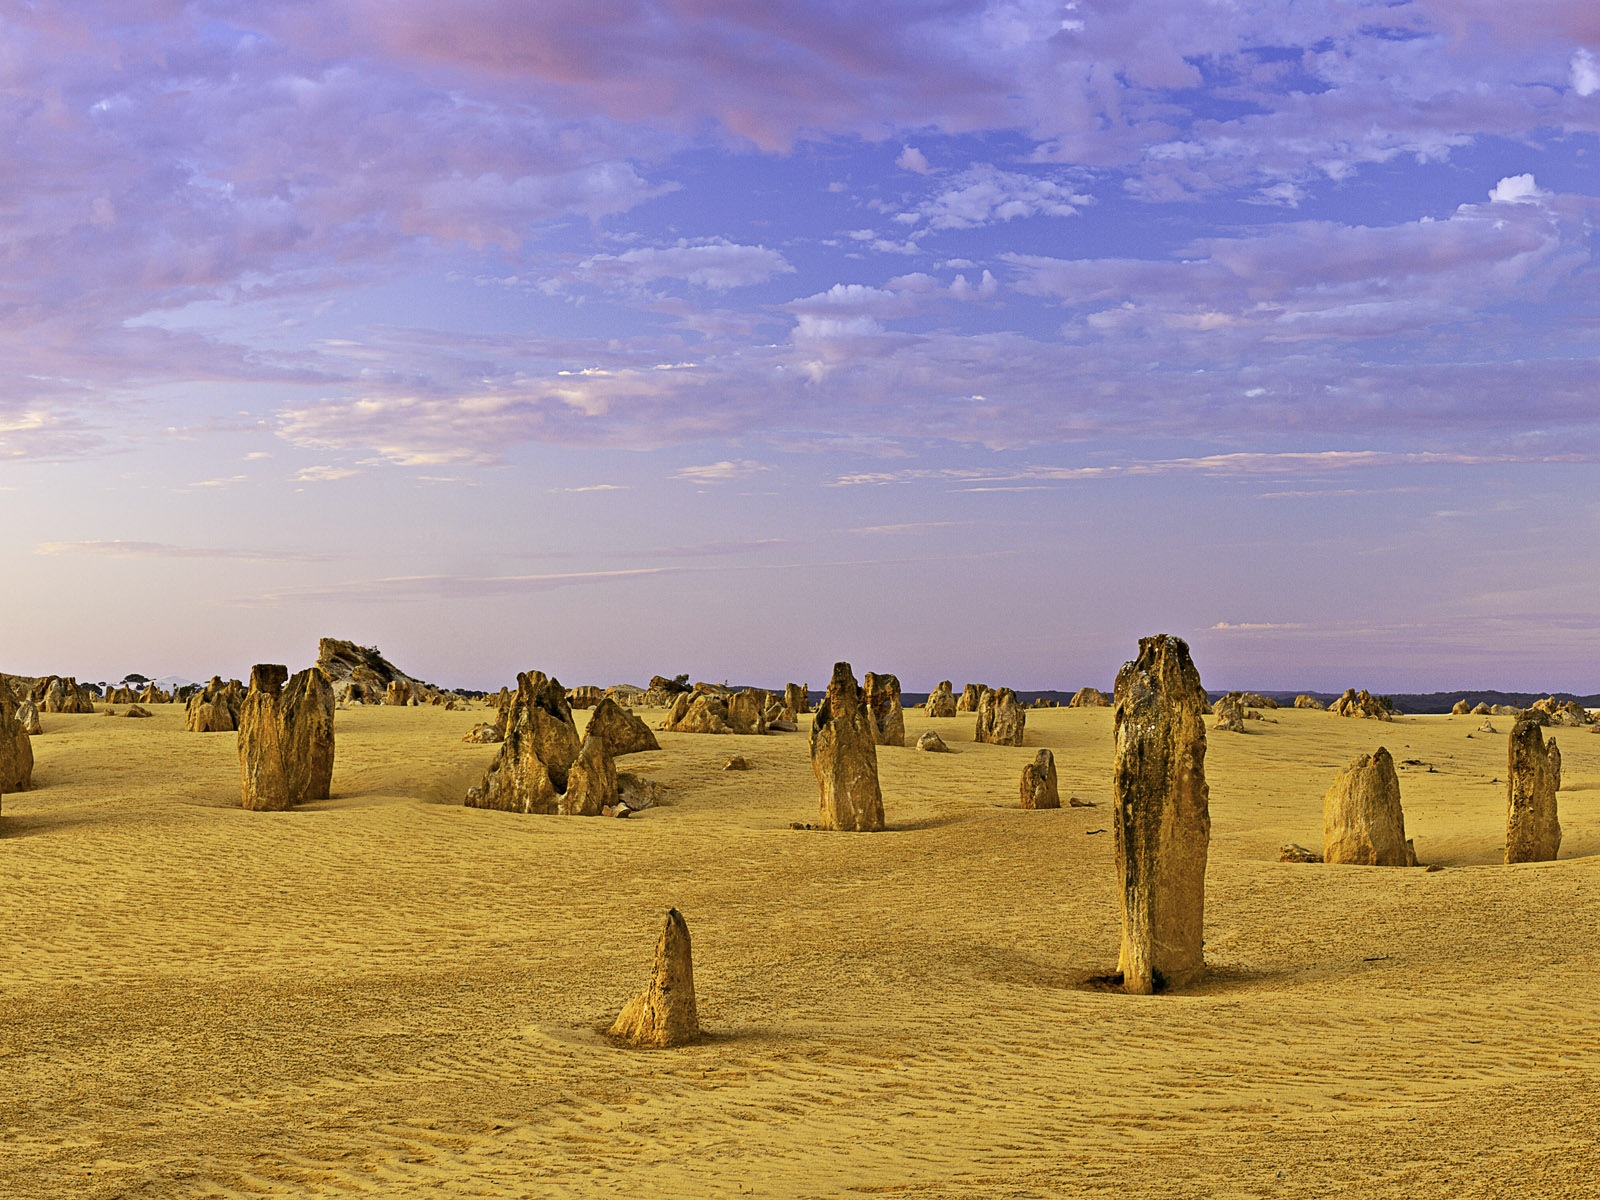 Les déserts chauds et arides, de Windows 8 fonds d'écran widescreen panoramique #8 - 1600x1200